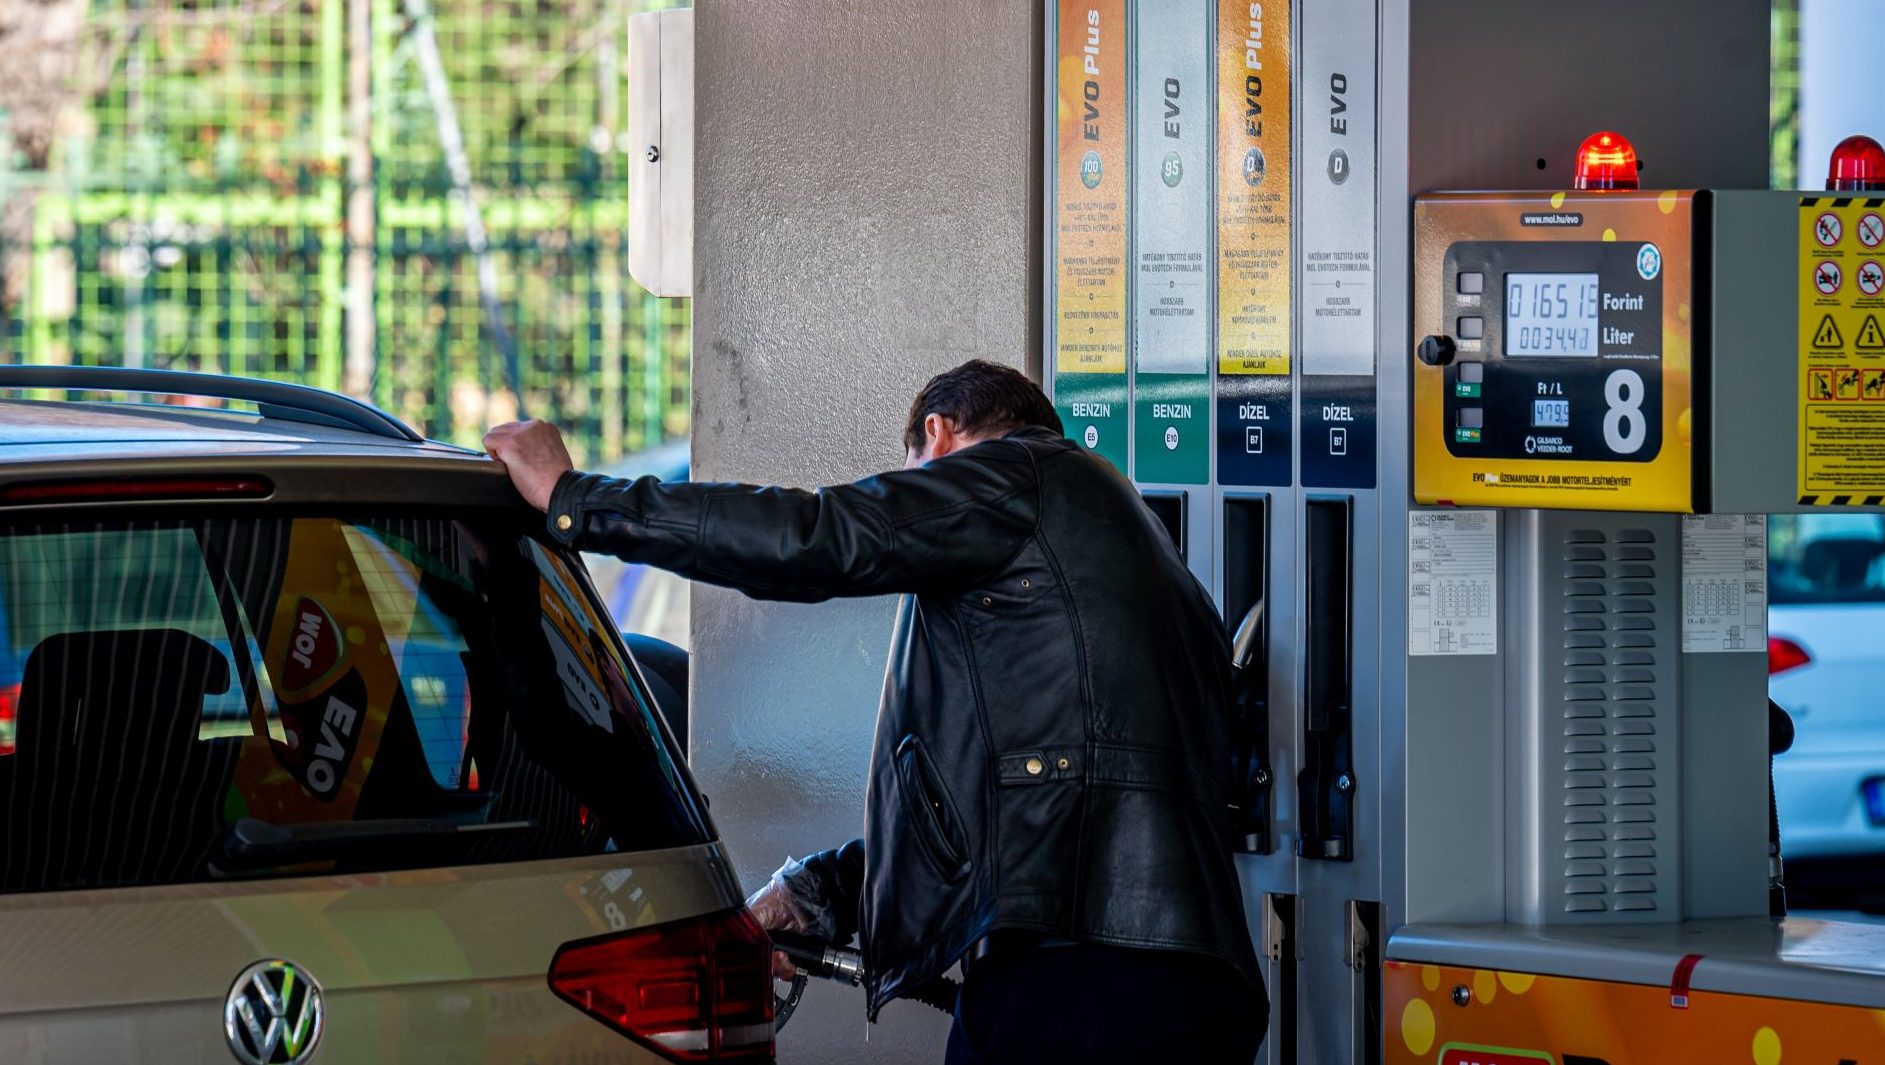 A román kormány literenként 40 forintnyi összeggel kompenzálja az üzemanyagok árát